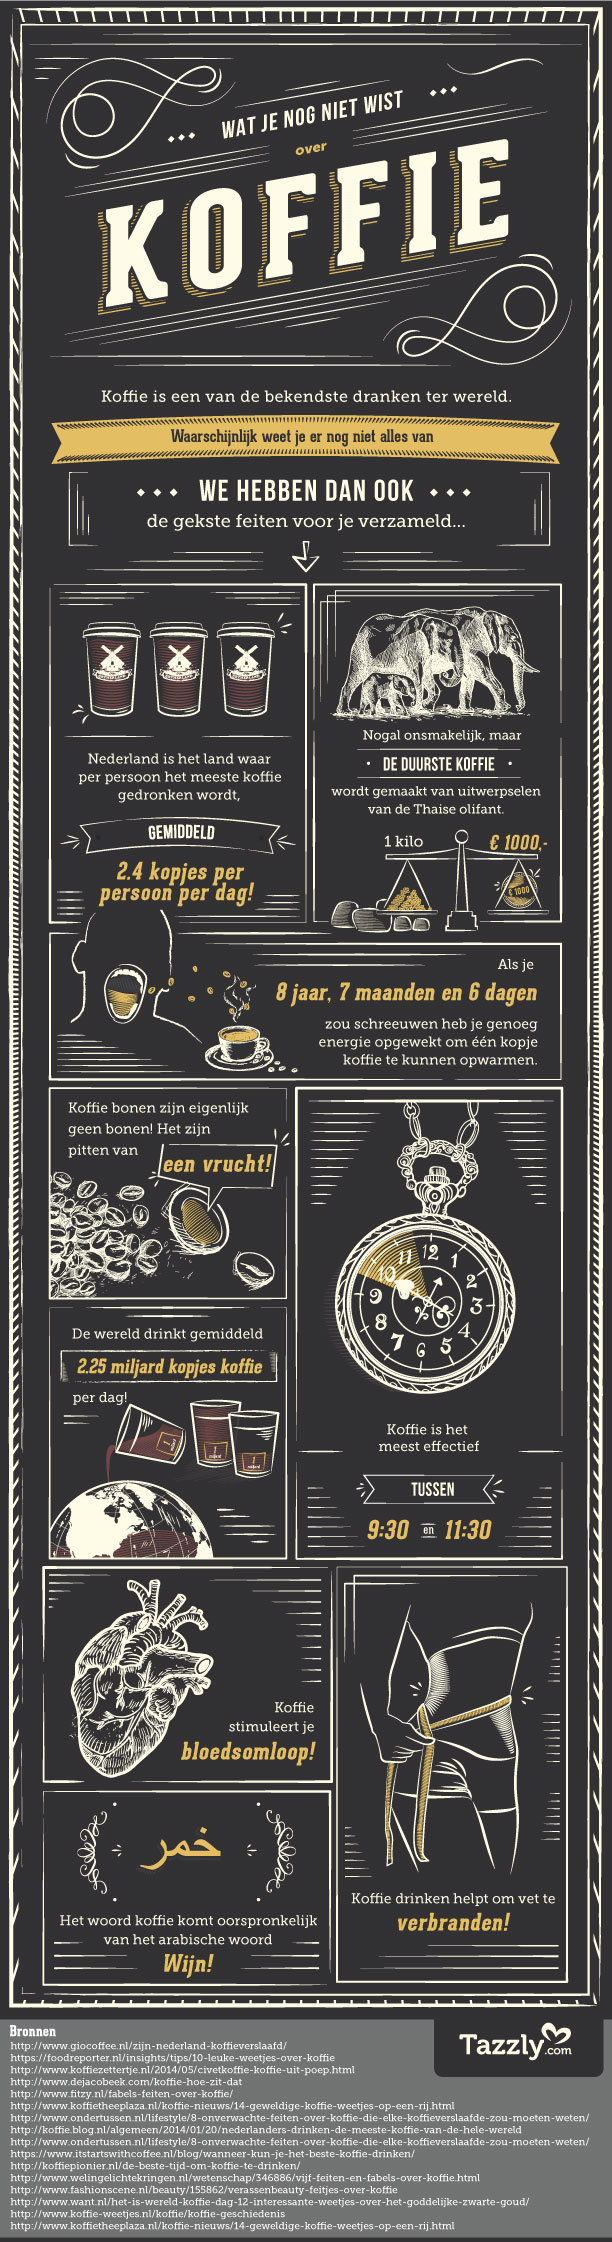 9 feiten over koffie en koffiedrinken die je nog niet wist.